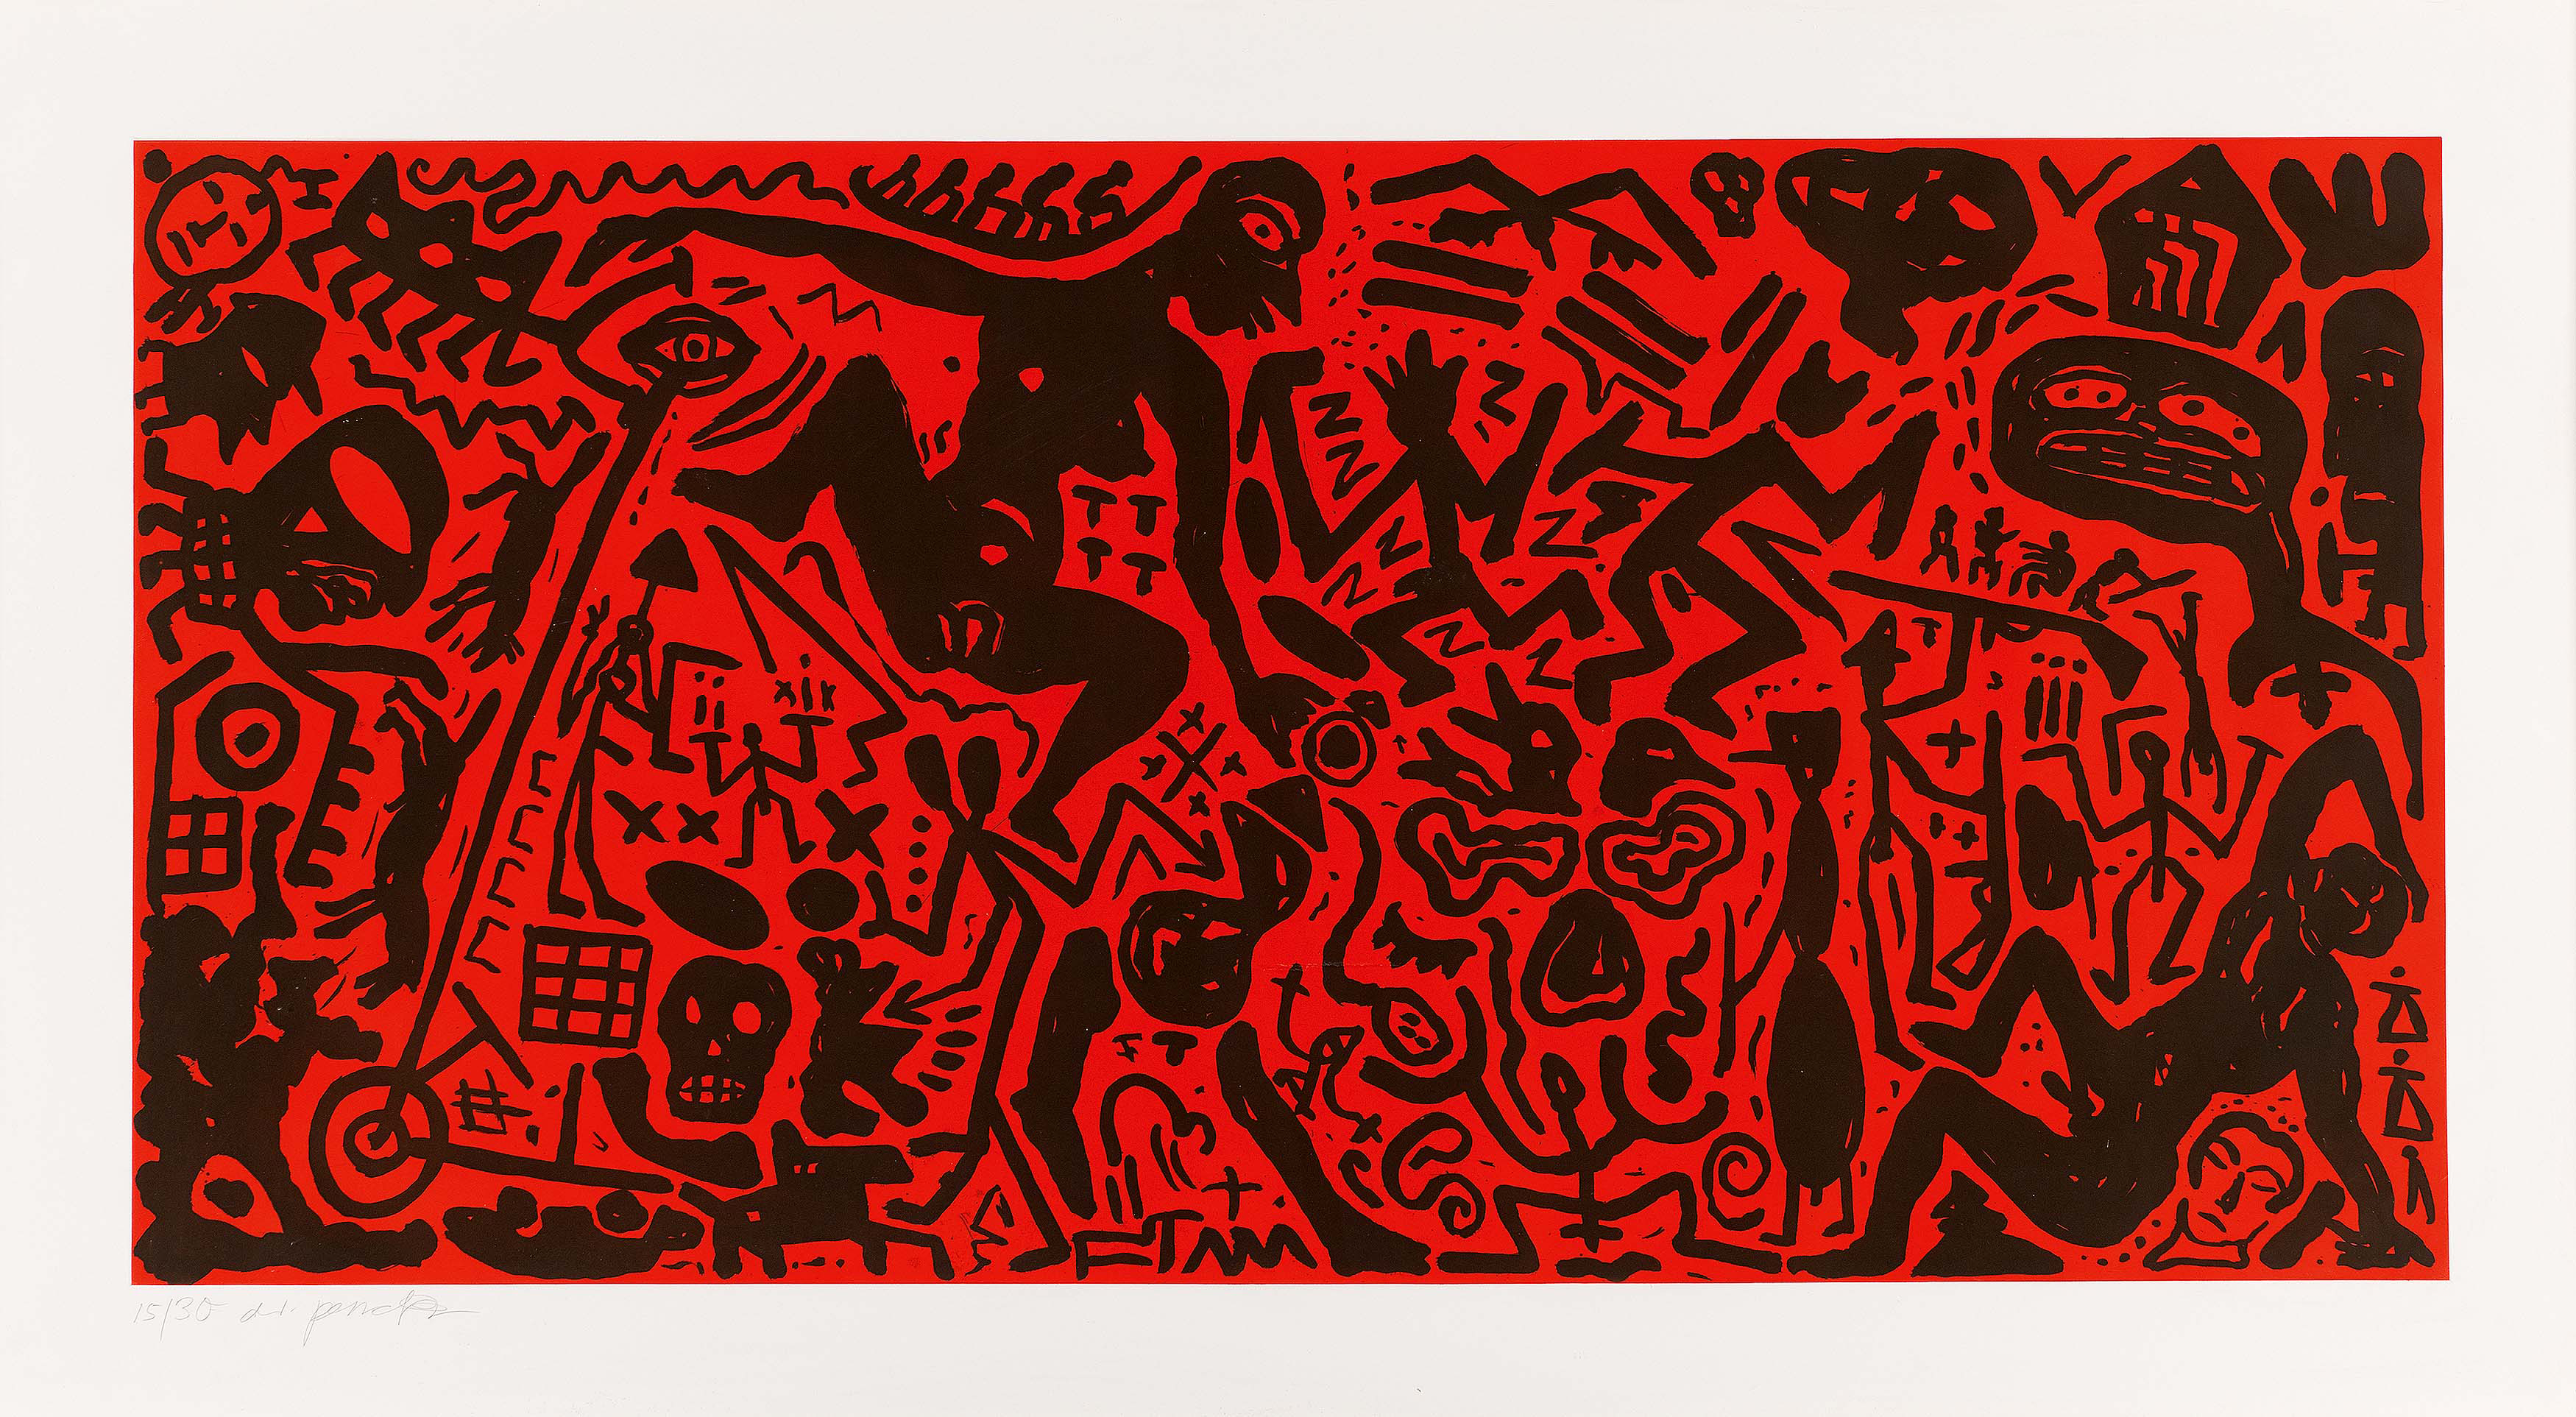 AR Penck - Revolutionaeres Jahr, 69765-2, Van Ham Kunstauktionen